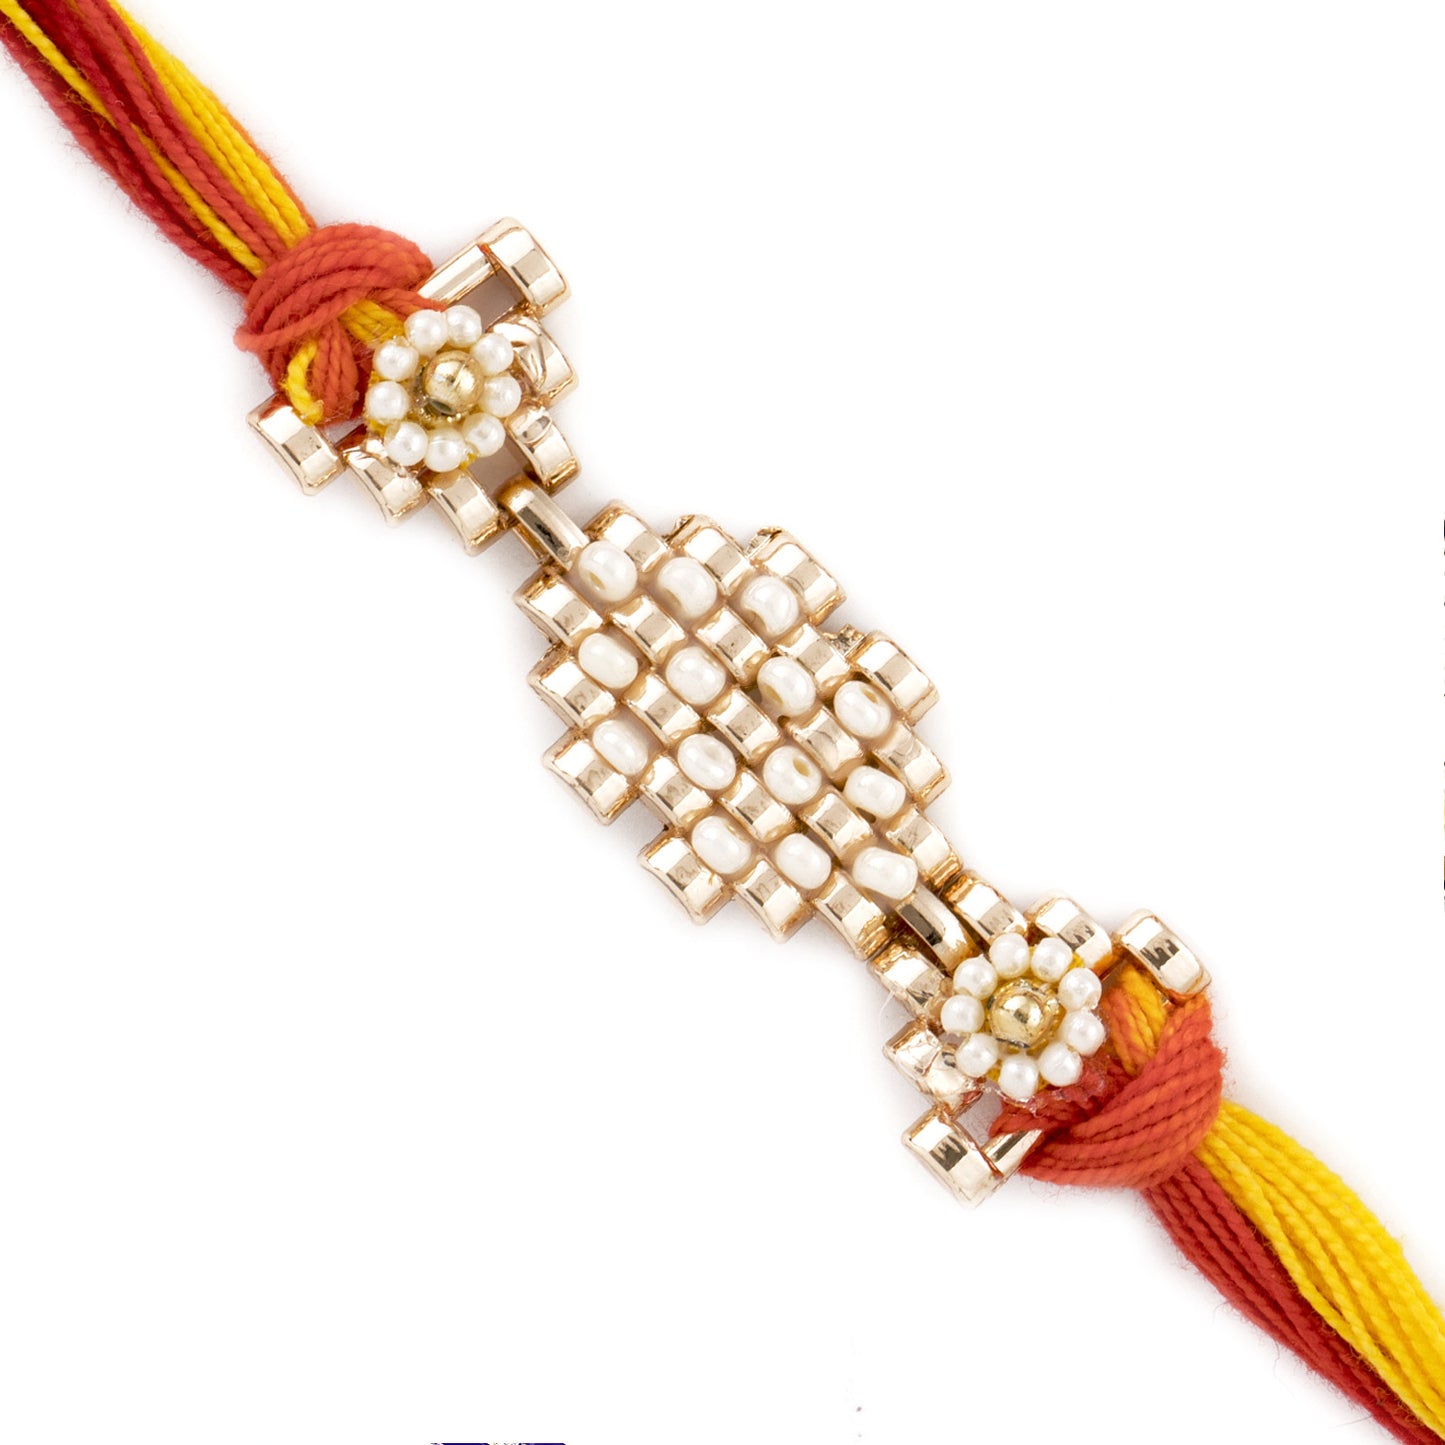 Aapno Rajasthan Beautiful White Beads Studded Metallic Rakhi - Default Title (RJ1884)